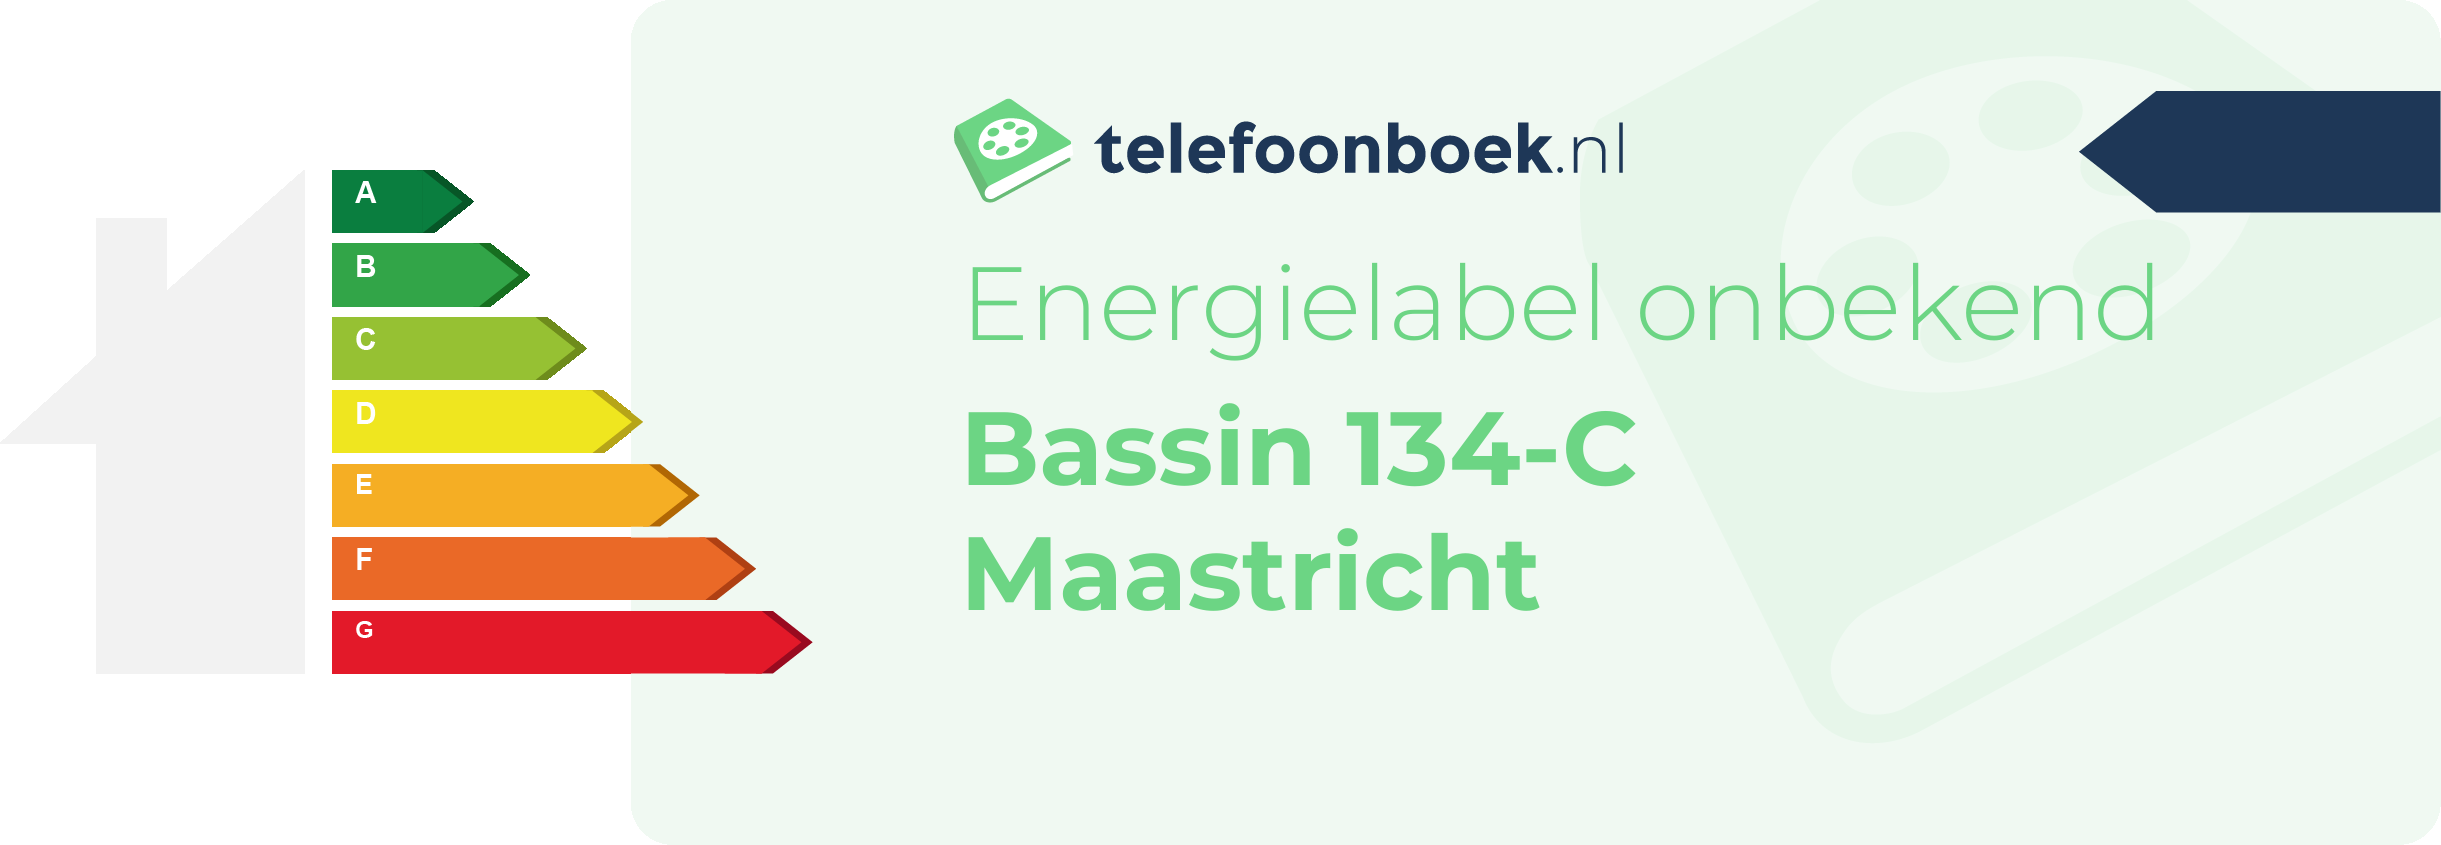 Energielabel Bassin 134-C Maastricht